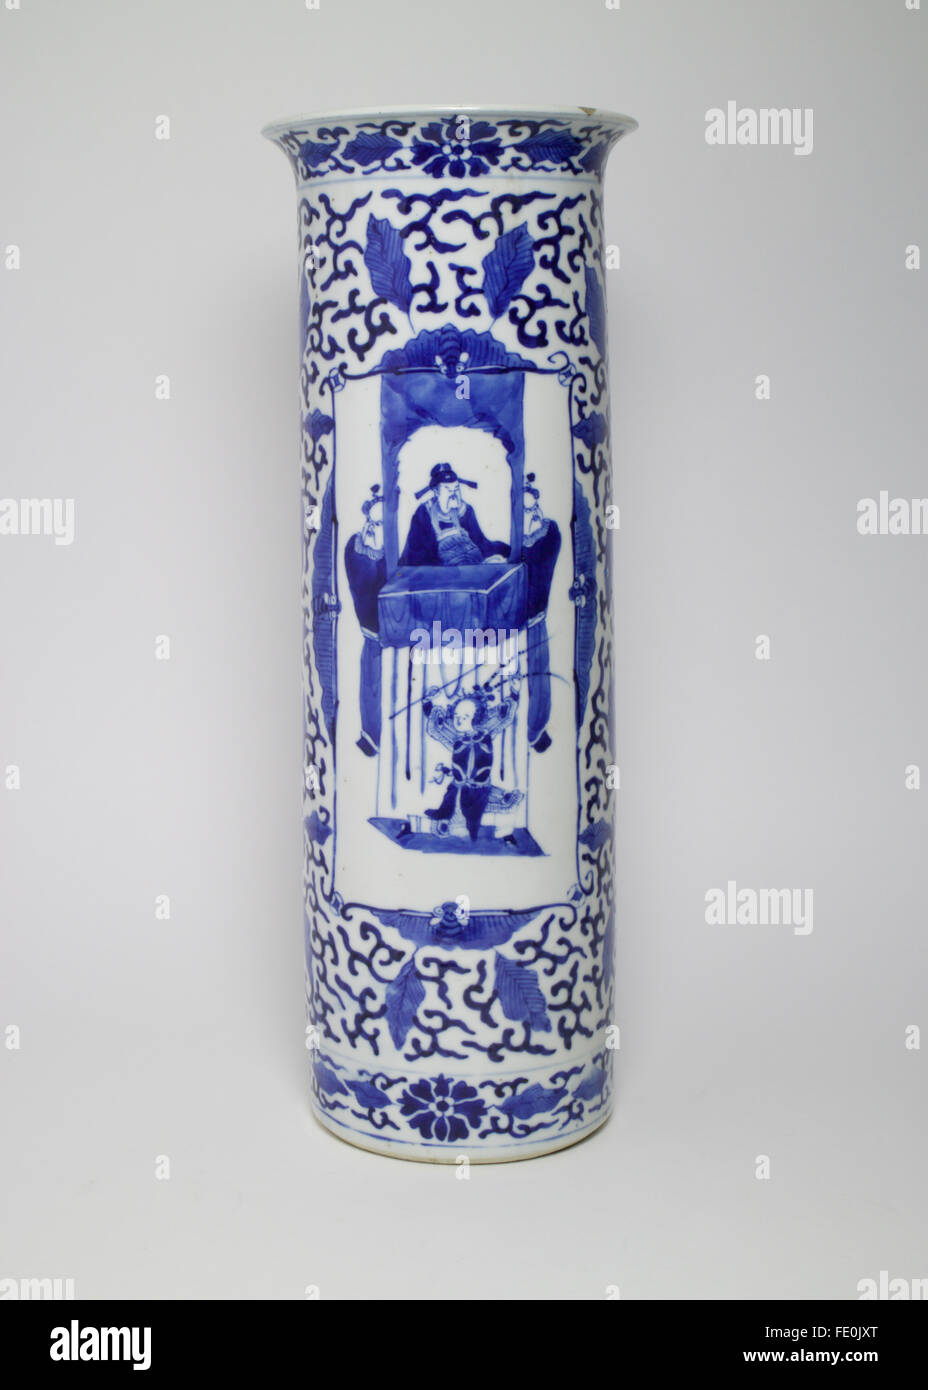 Grand chinois antique vase en porcelaine bleu et blanc avec deux panneaux peints de figures l'observation d'un enfant effectuer Banque D'Images